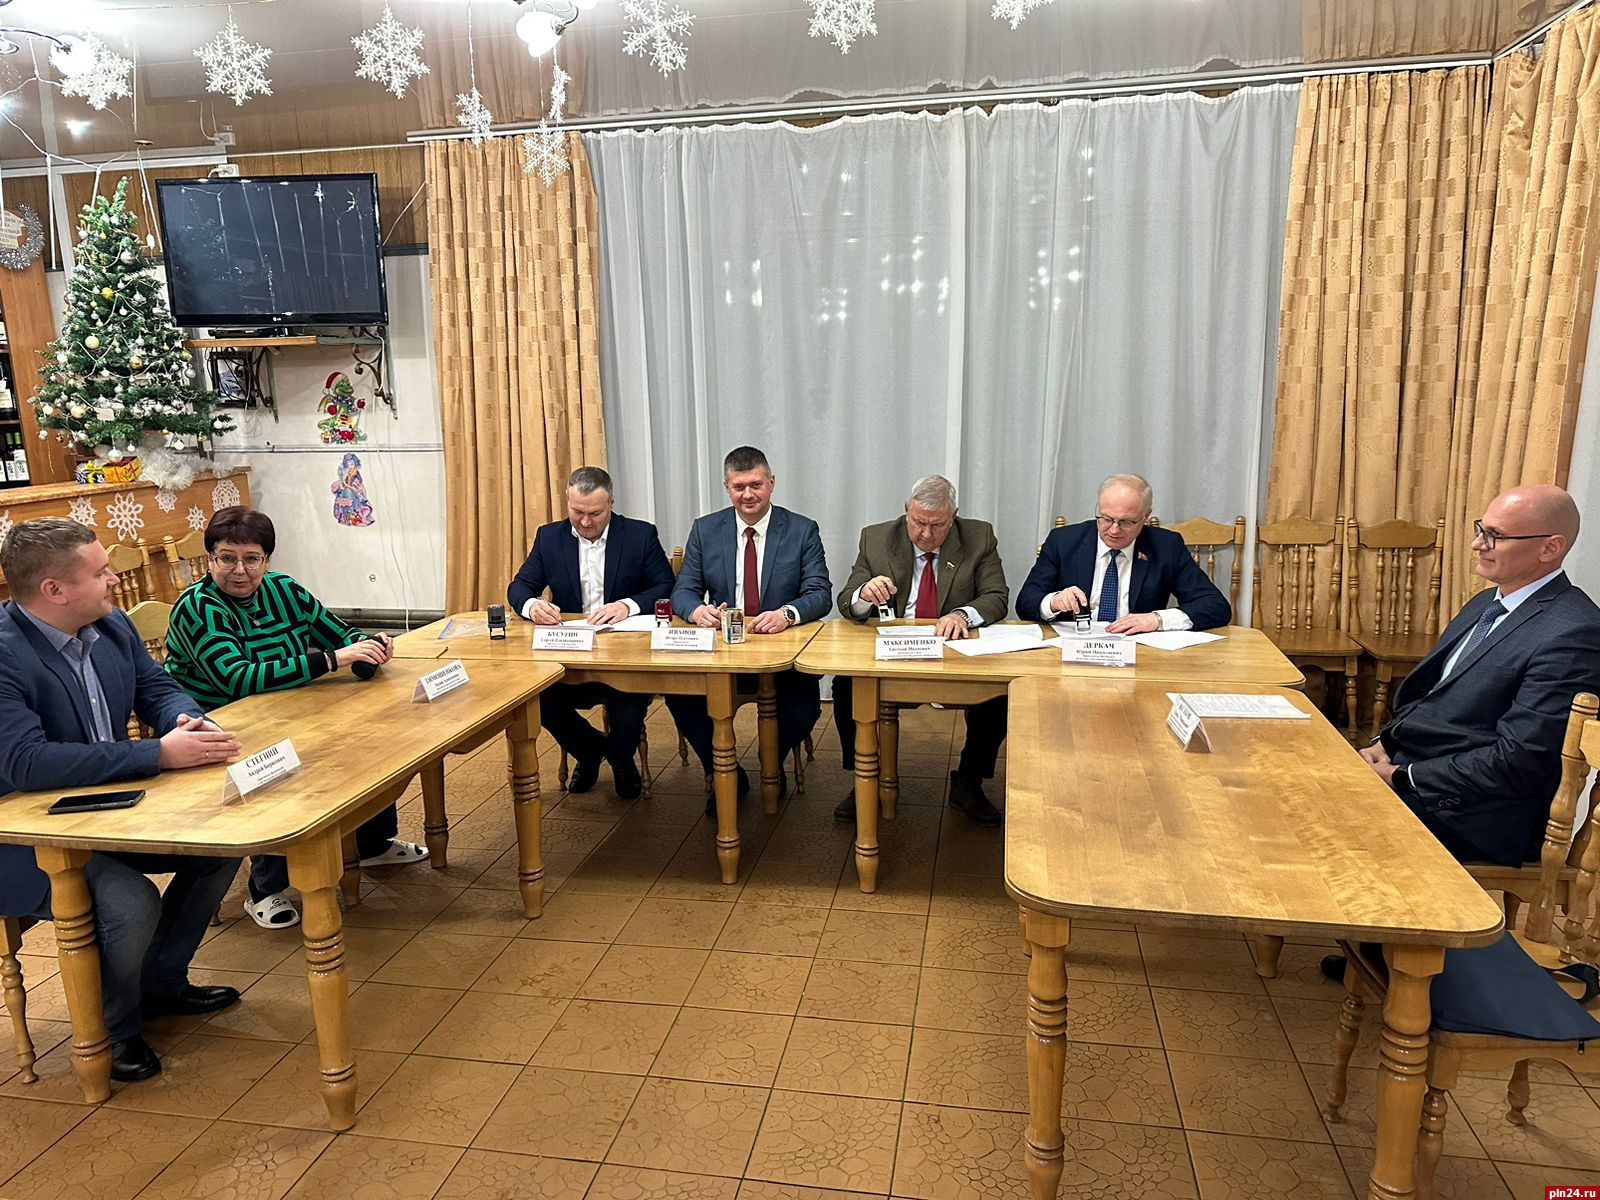 Совместную программу действий профсоюзов четырех регионов подписали в Псковской области